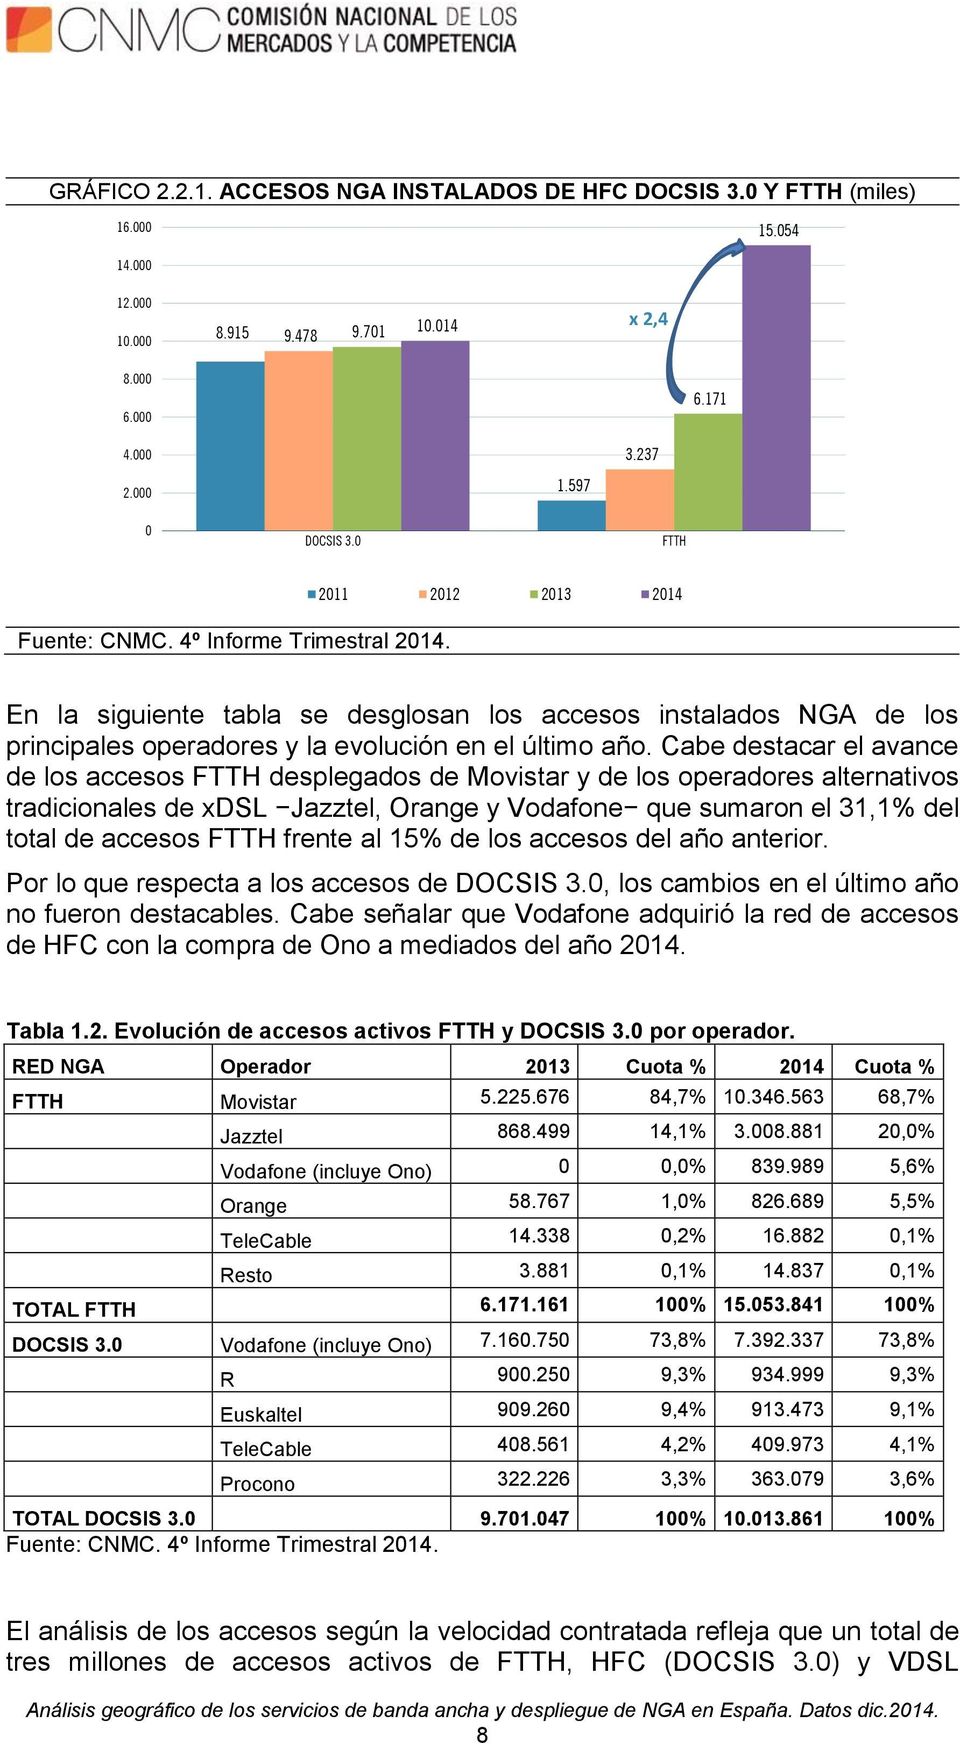 Cabe destacar el avance de los accesos FTTH desplegados de Movistar y de los operadores alternativos tradicionales de xdsl Jazztel, Orange y Vodafone que sumaron el 31,1% del total de accesos FTTH